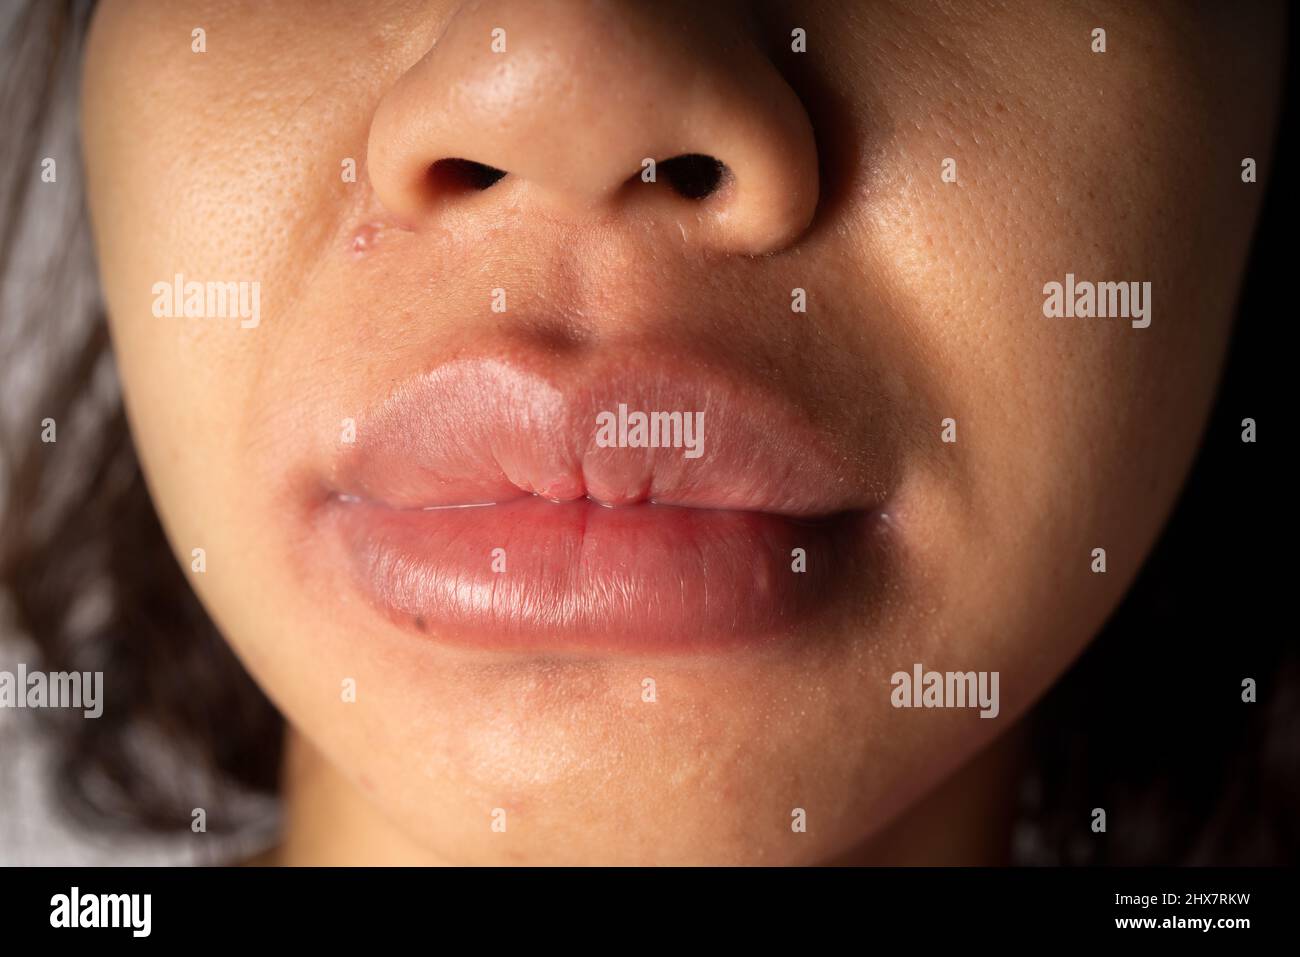 La bocca gonfia della donna con un'eruzione cutanea dovuta ad allergie alimentari, può essere allergica al latte di vacca, ai frutti di mare, al burro di arachidi, ai gamberetti o ai pesci Foto Stock